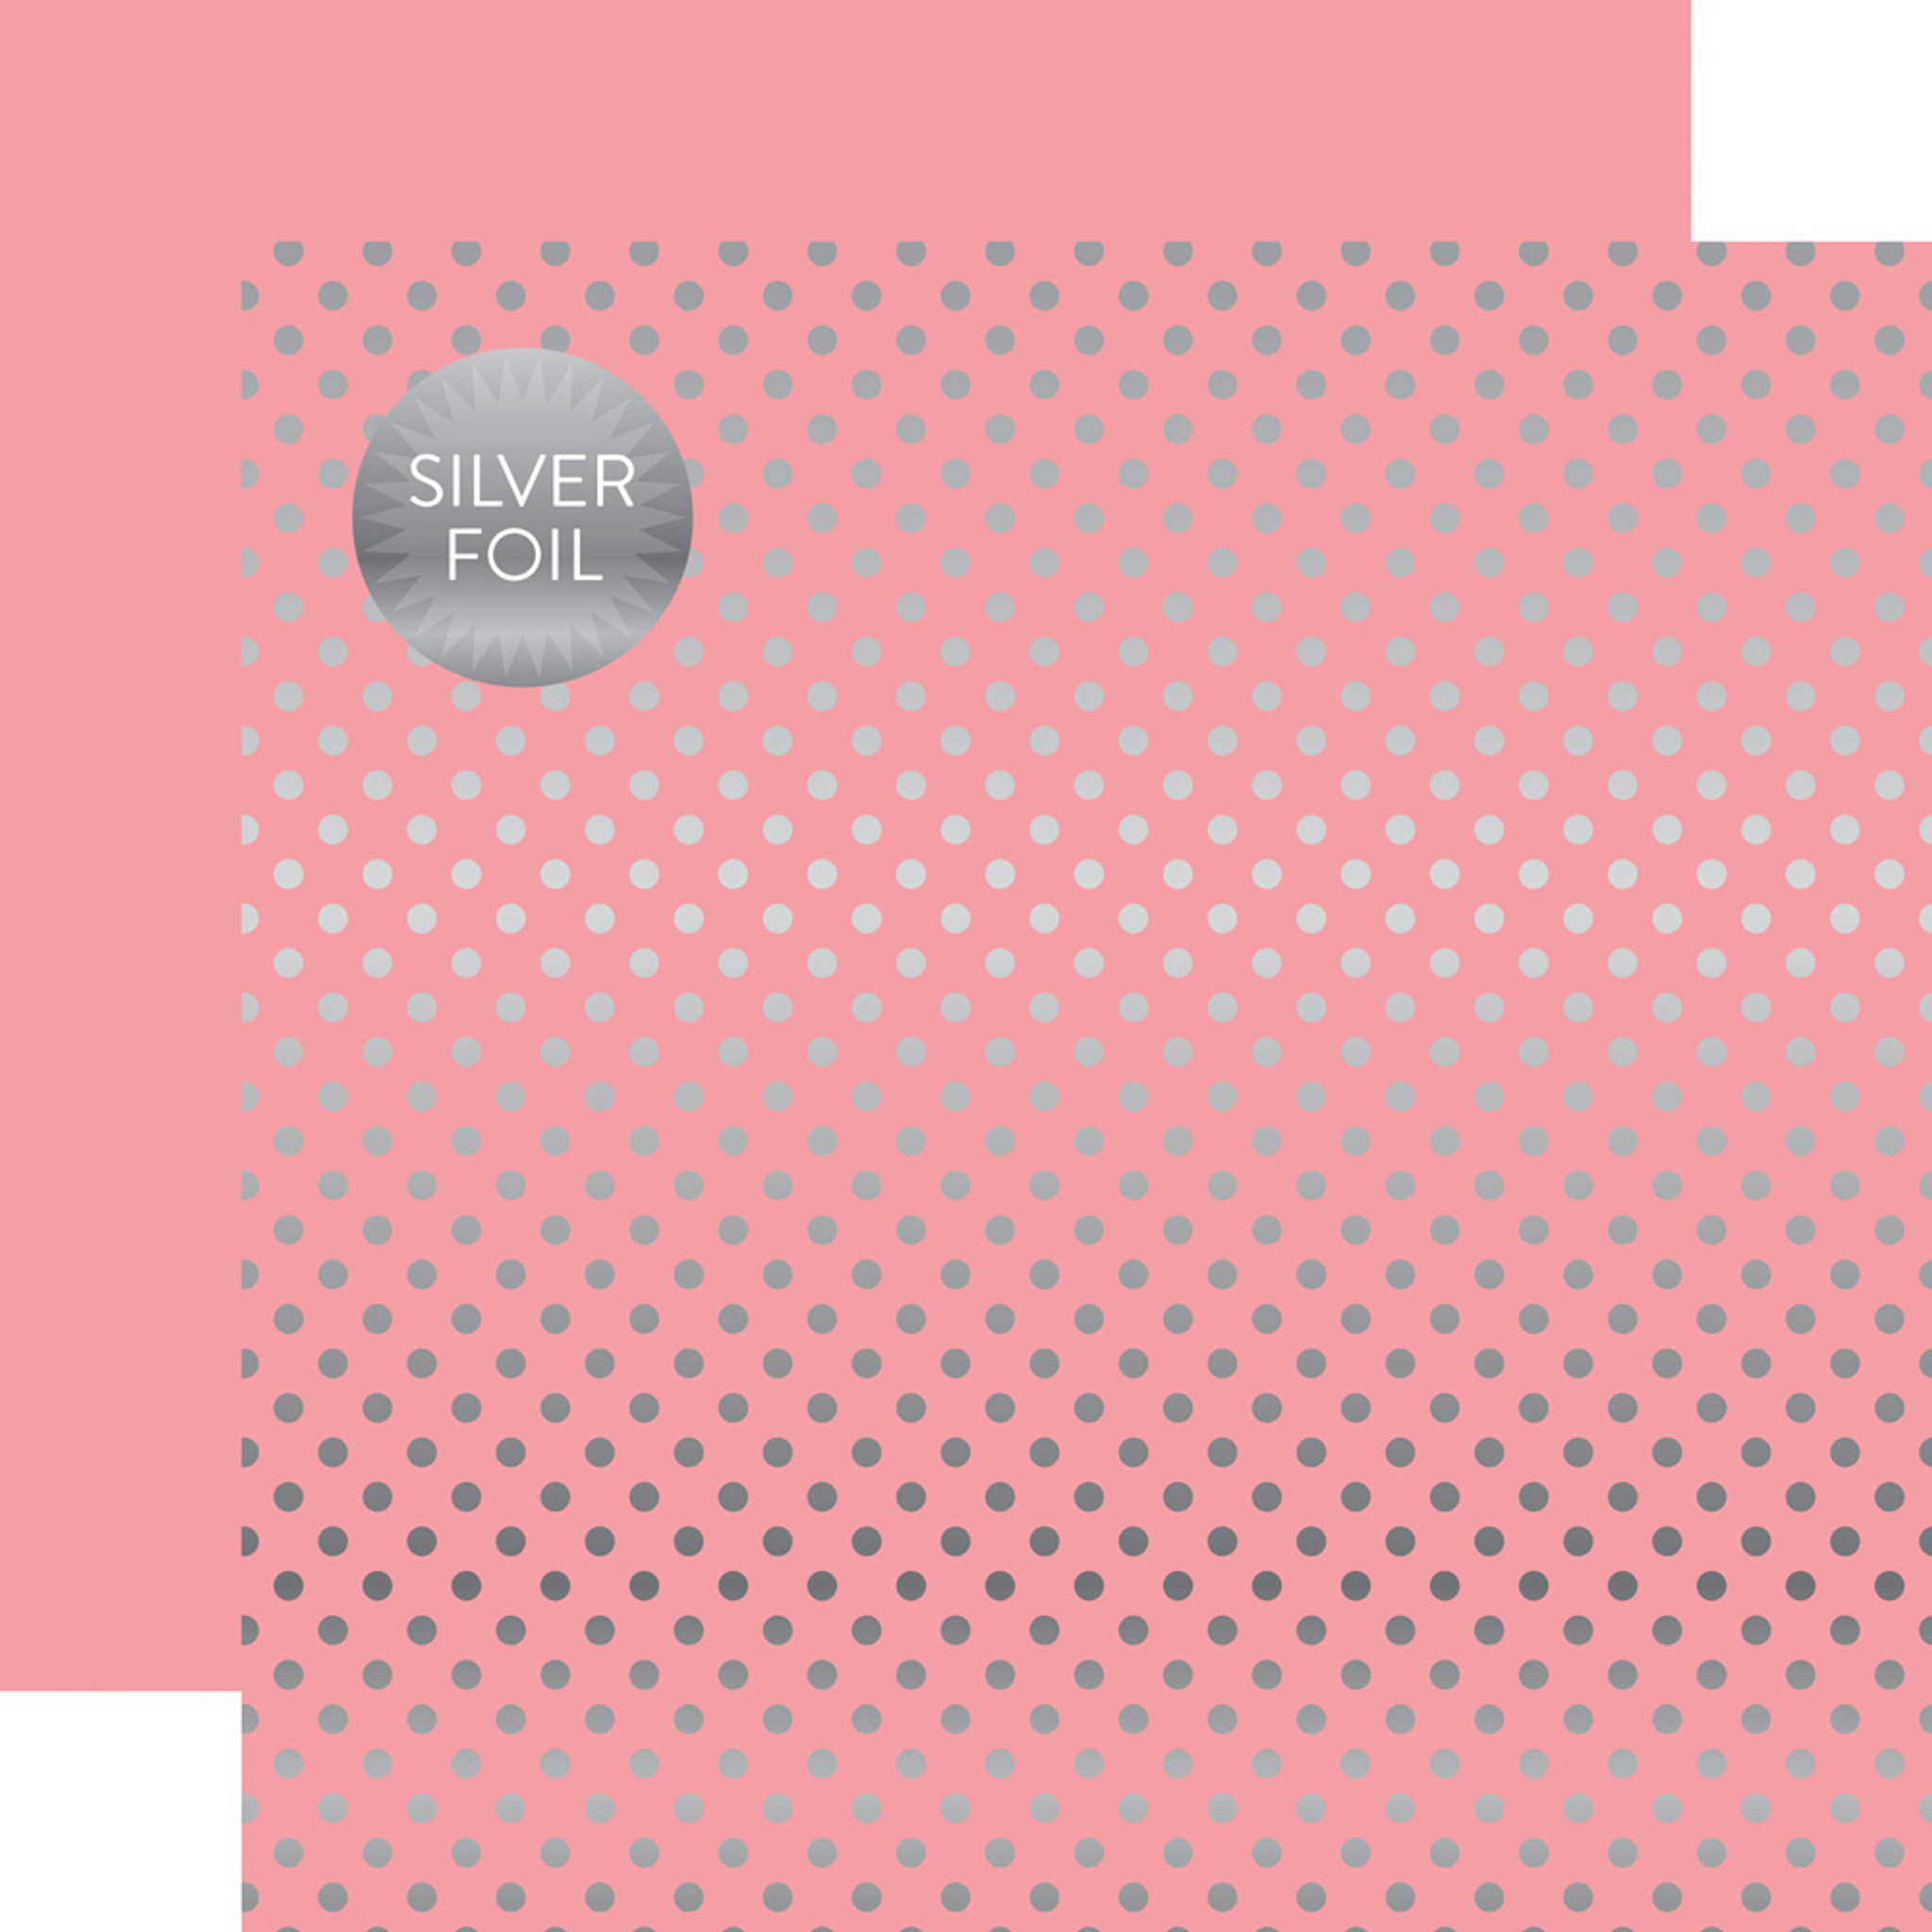 Dots & Stripes: Pink Silver Foil 12x12 Patterned Paper - Echo Park Paper Co.